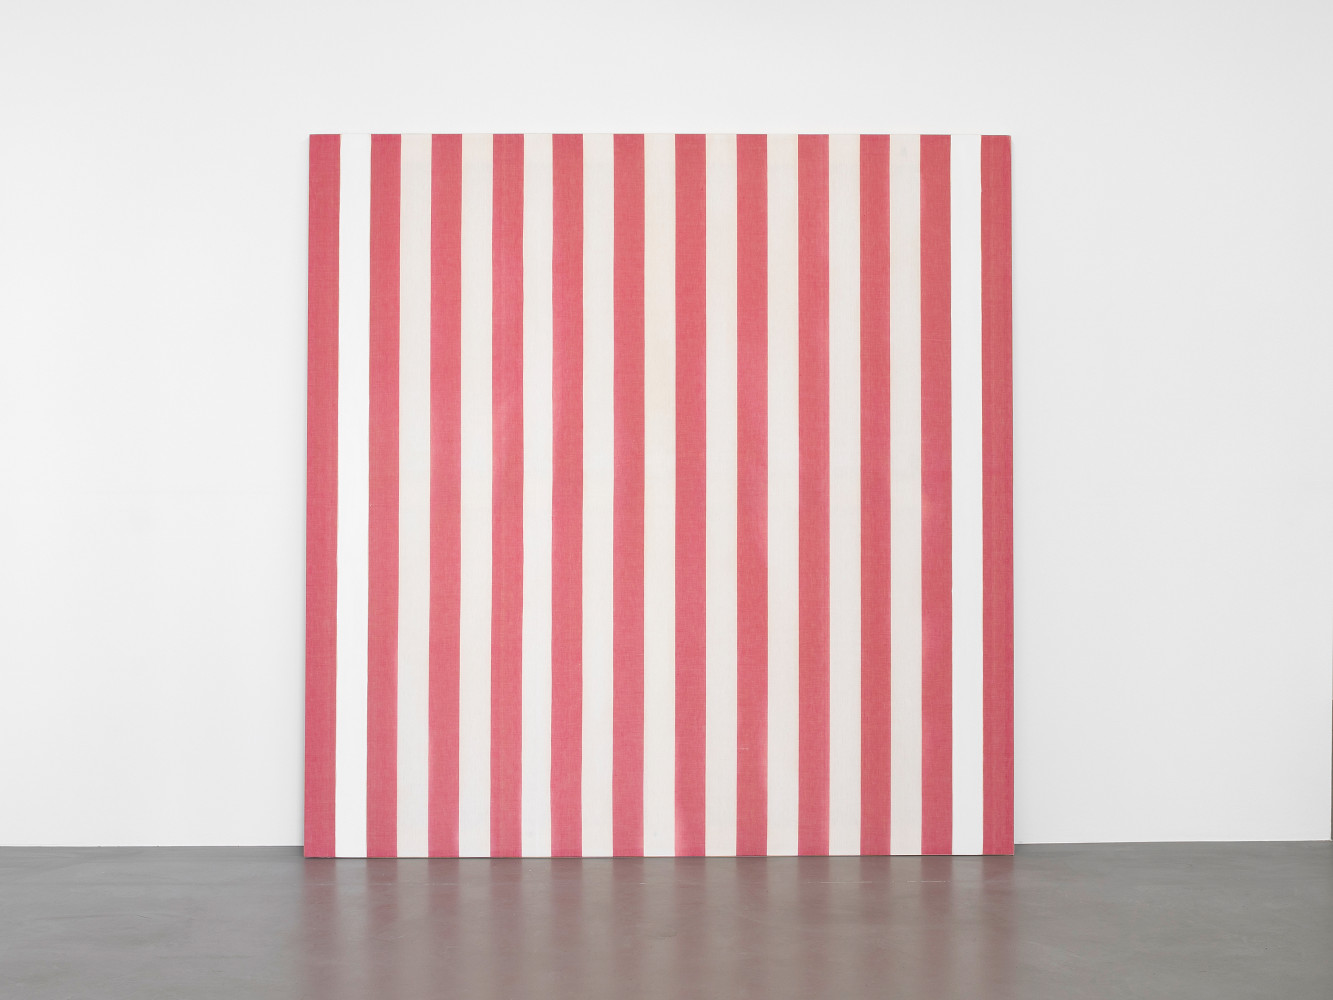 Daniel Buren, ‘Peinture acrylique blanche sur tissu rayé blanc et rouge’, 1969, Acrylic on awning fabric